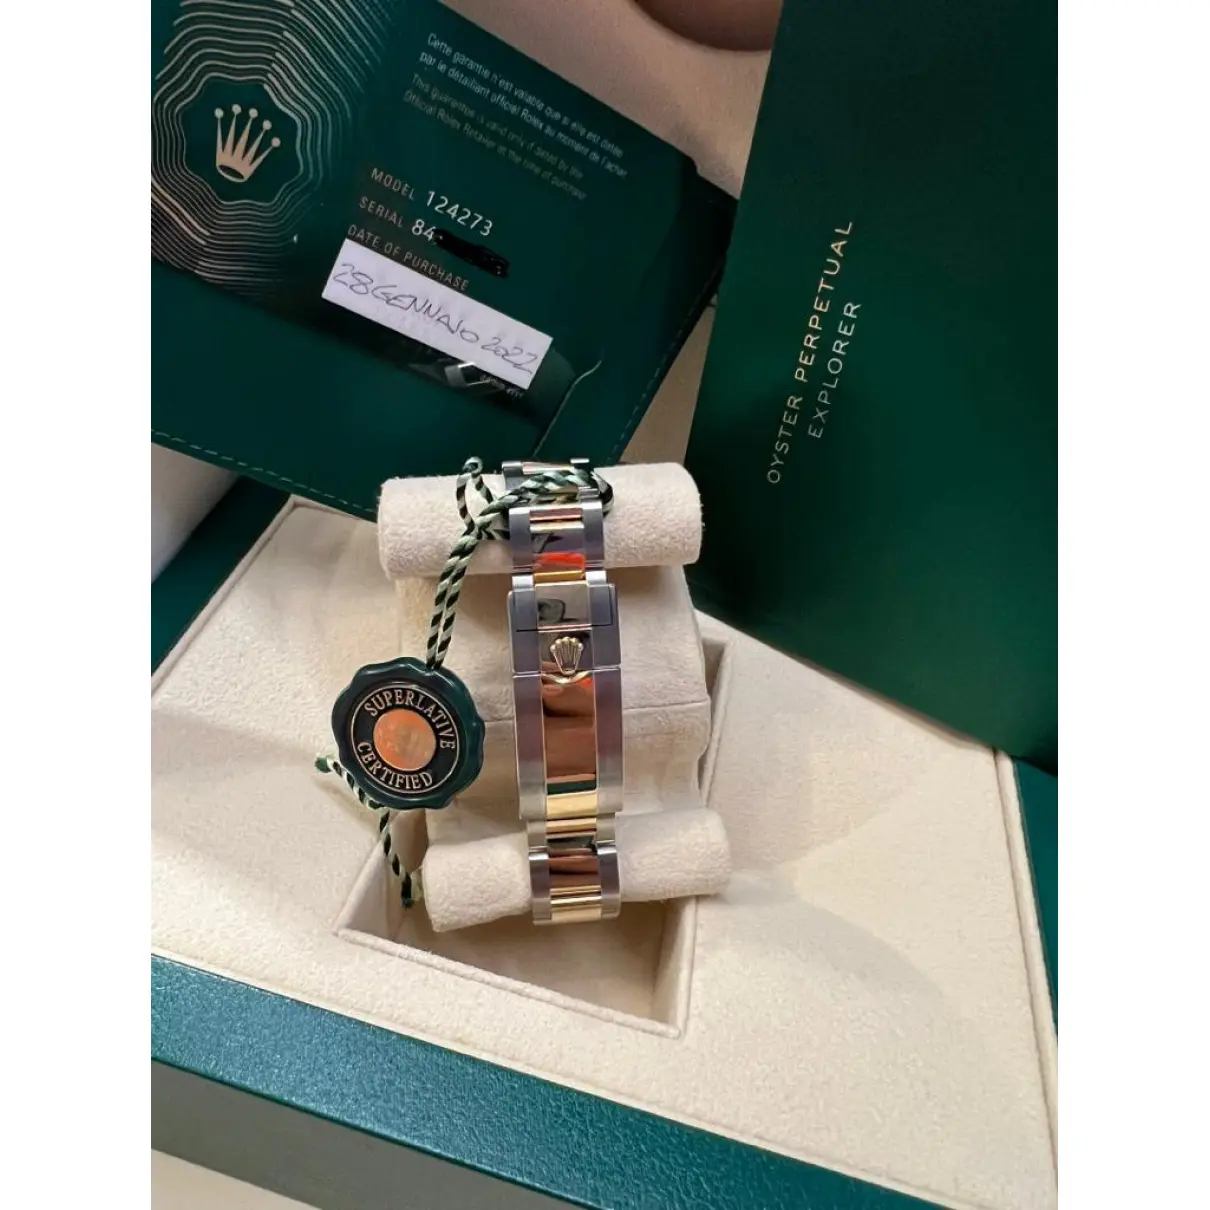 Buy Rolex Explorer watch online